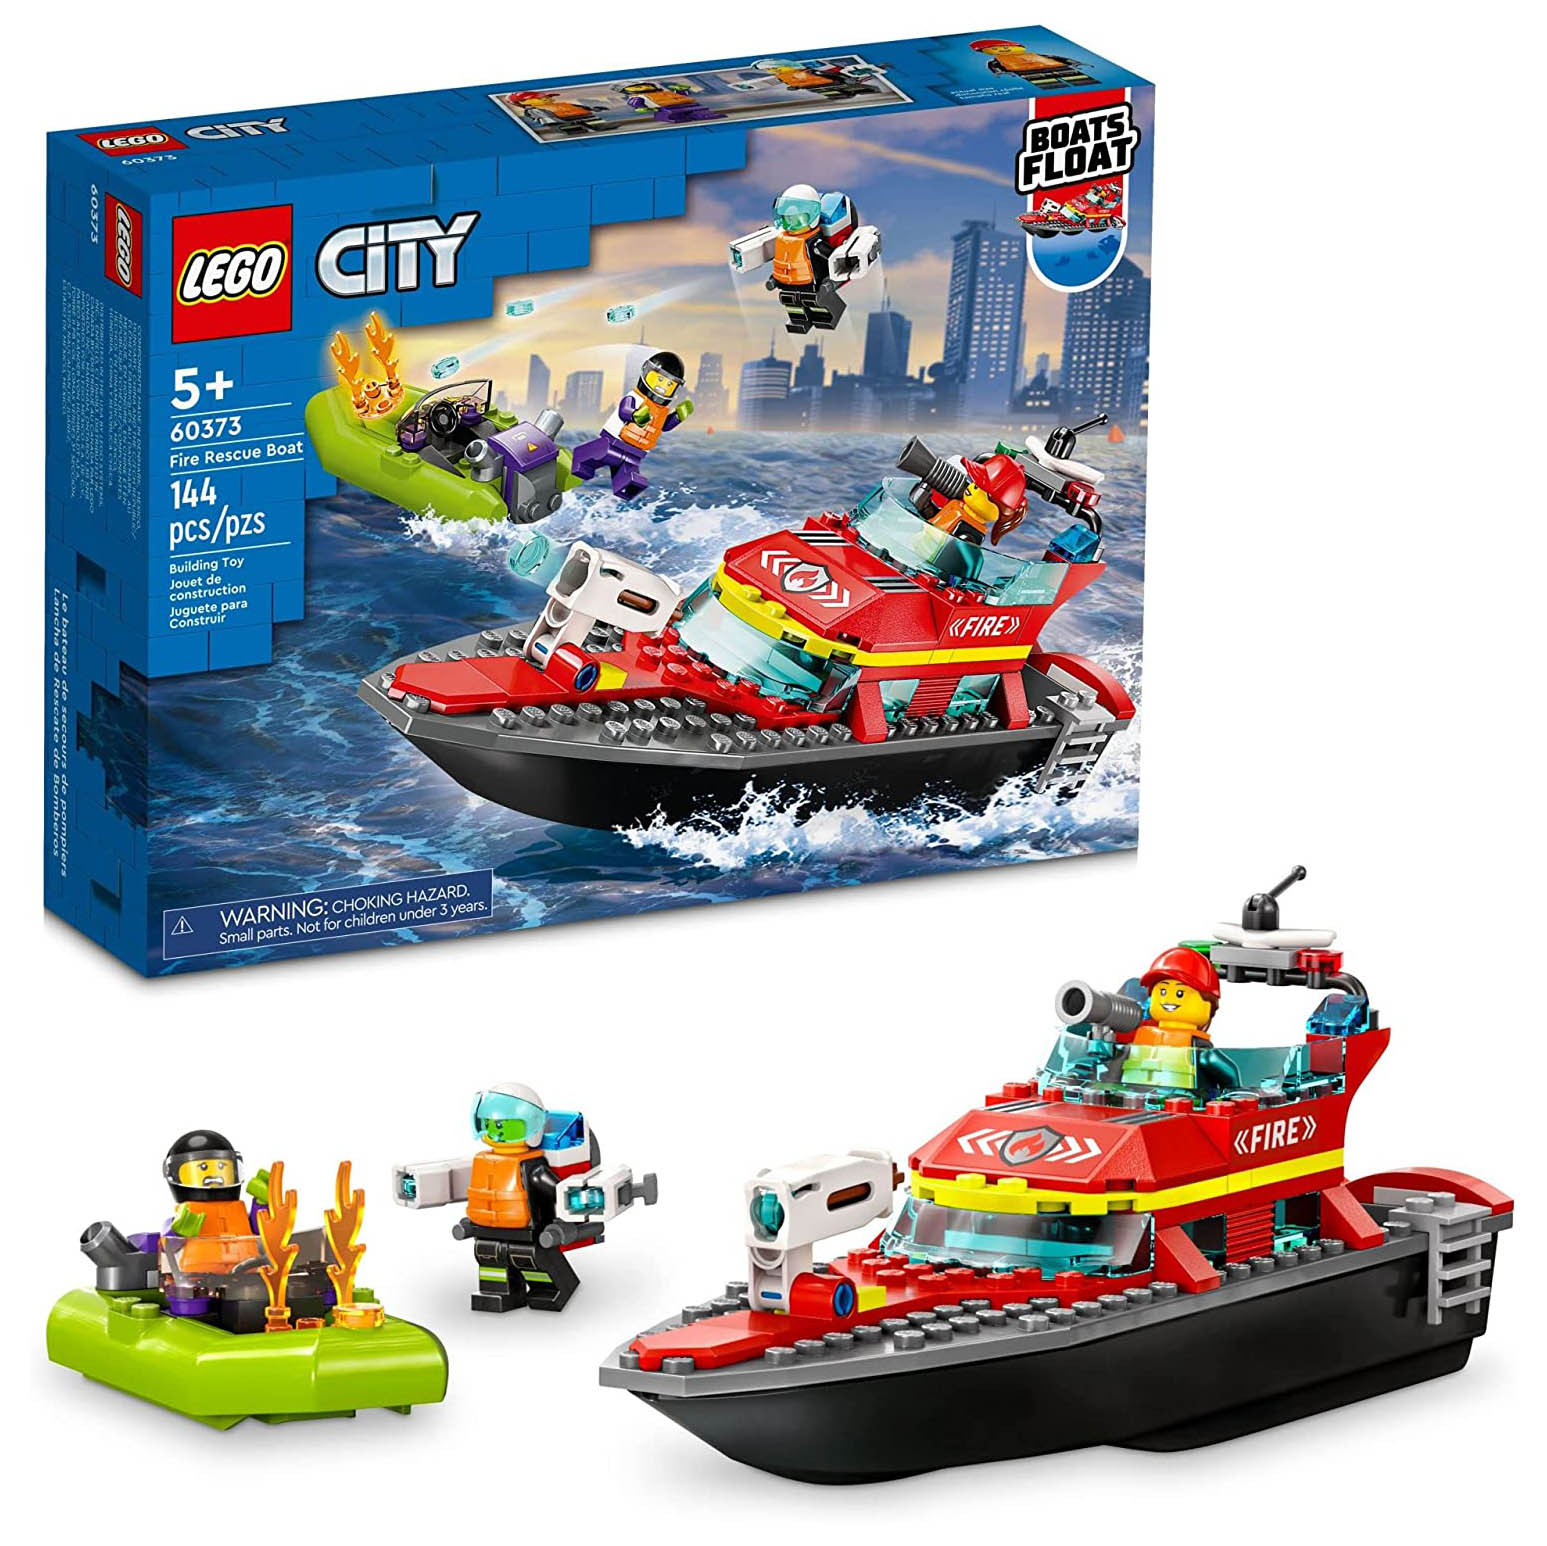 Конструктор LEGO City Пожарная спасательная лодка, 144 детали, 60373 lego friends морская спасательная лодка 41734